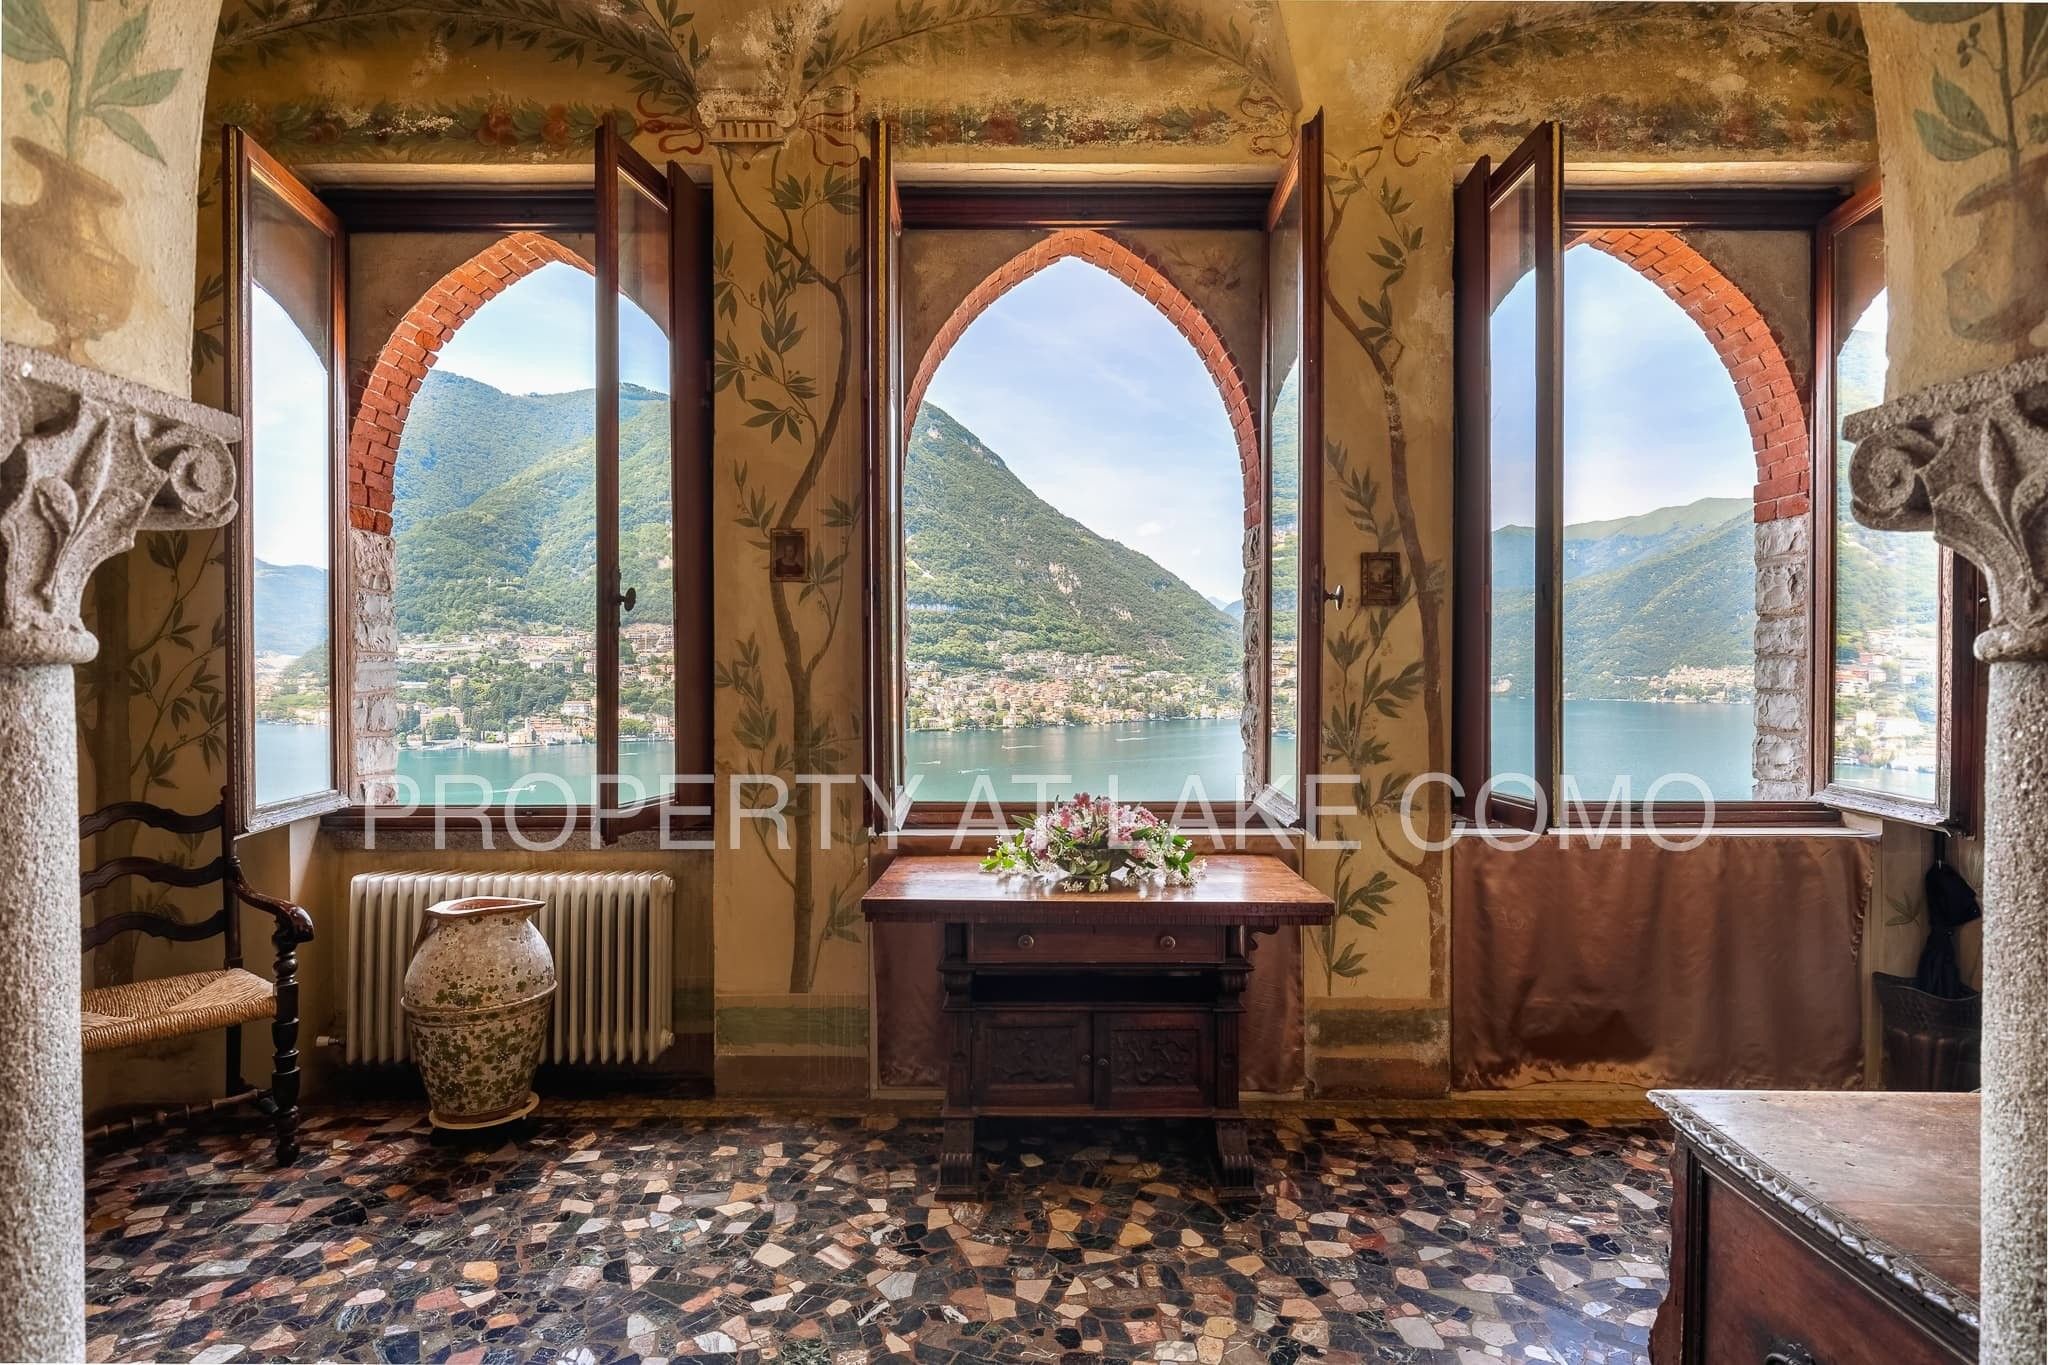 Fotos Il Castello - Magnífica villa en Torno, en el lago de Como